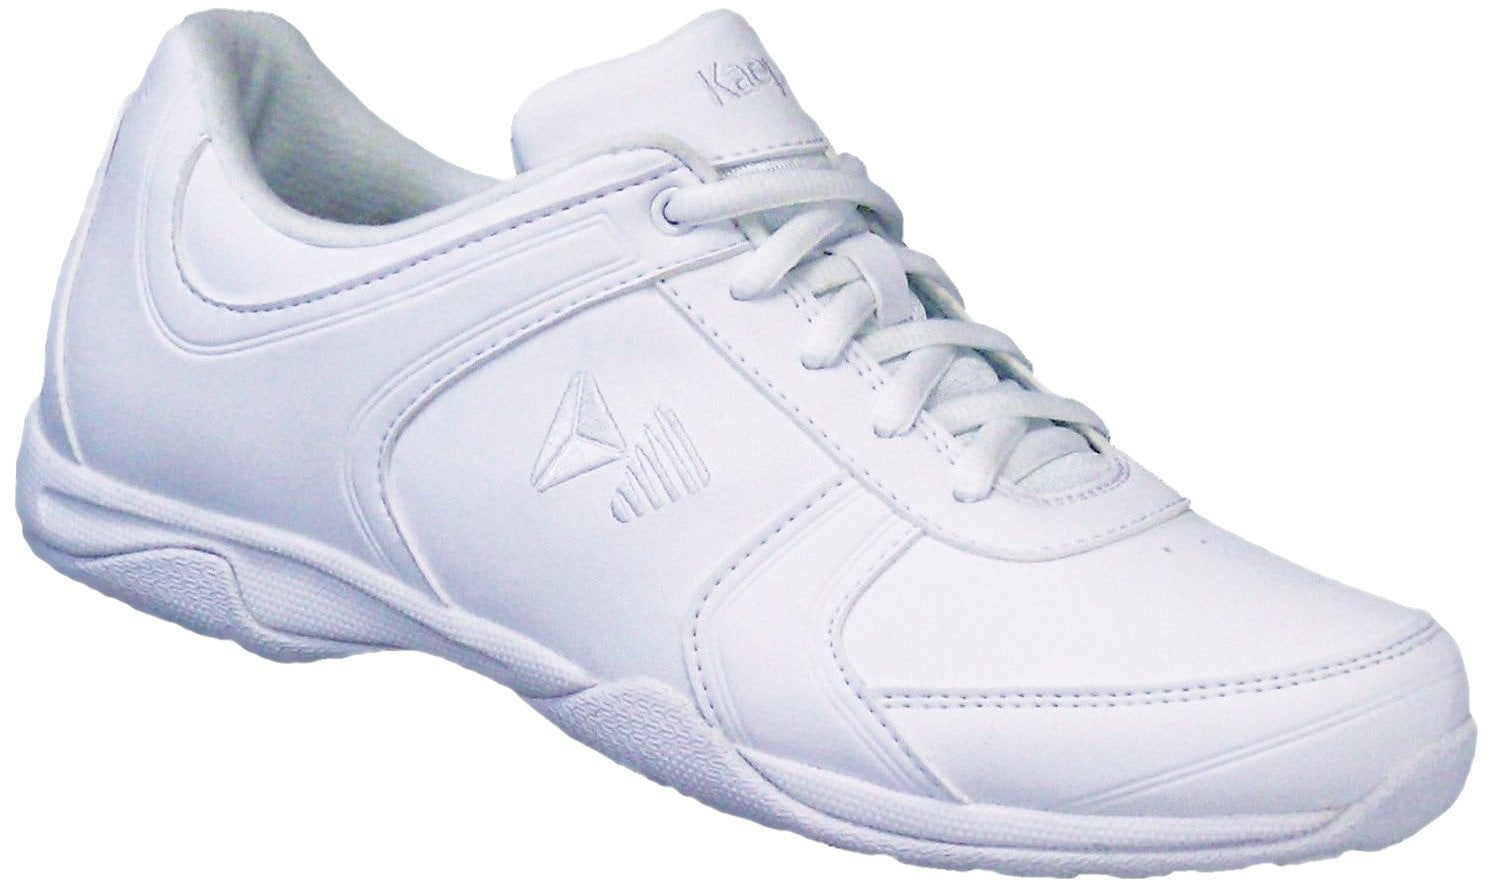 Kaepa Spark Cheer Shoe, White, 12 B US (12 B(M) US) - Walmart.com